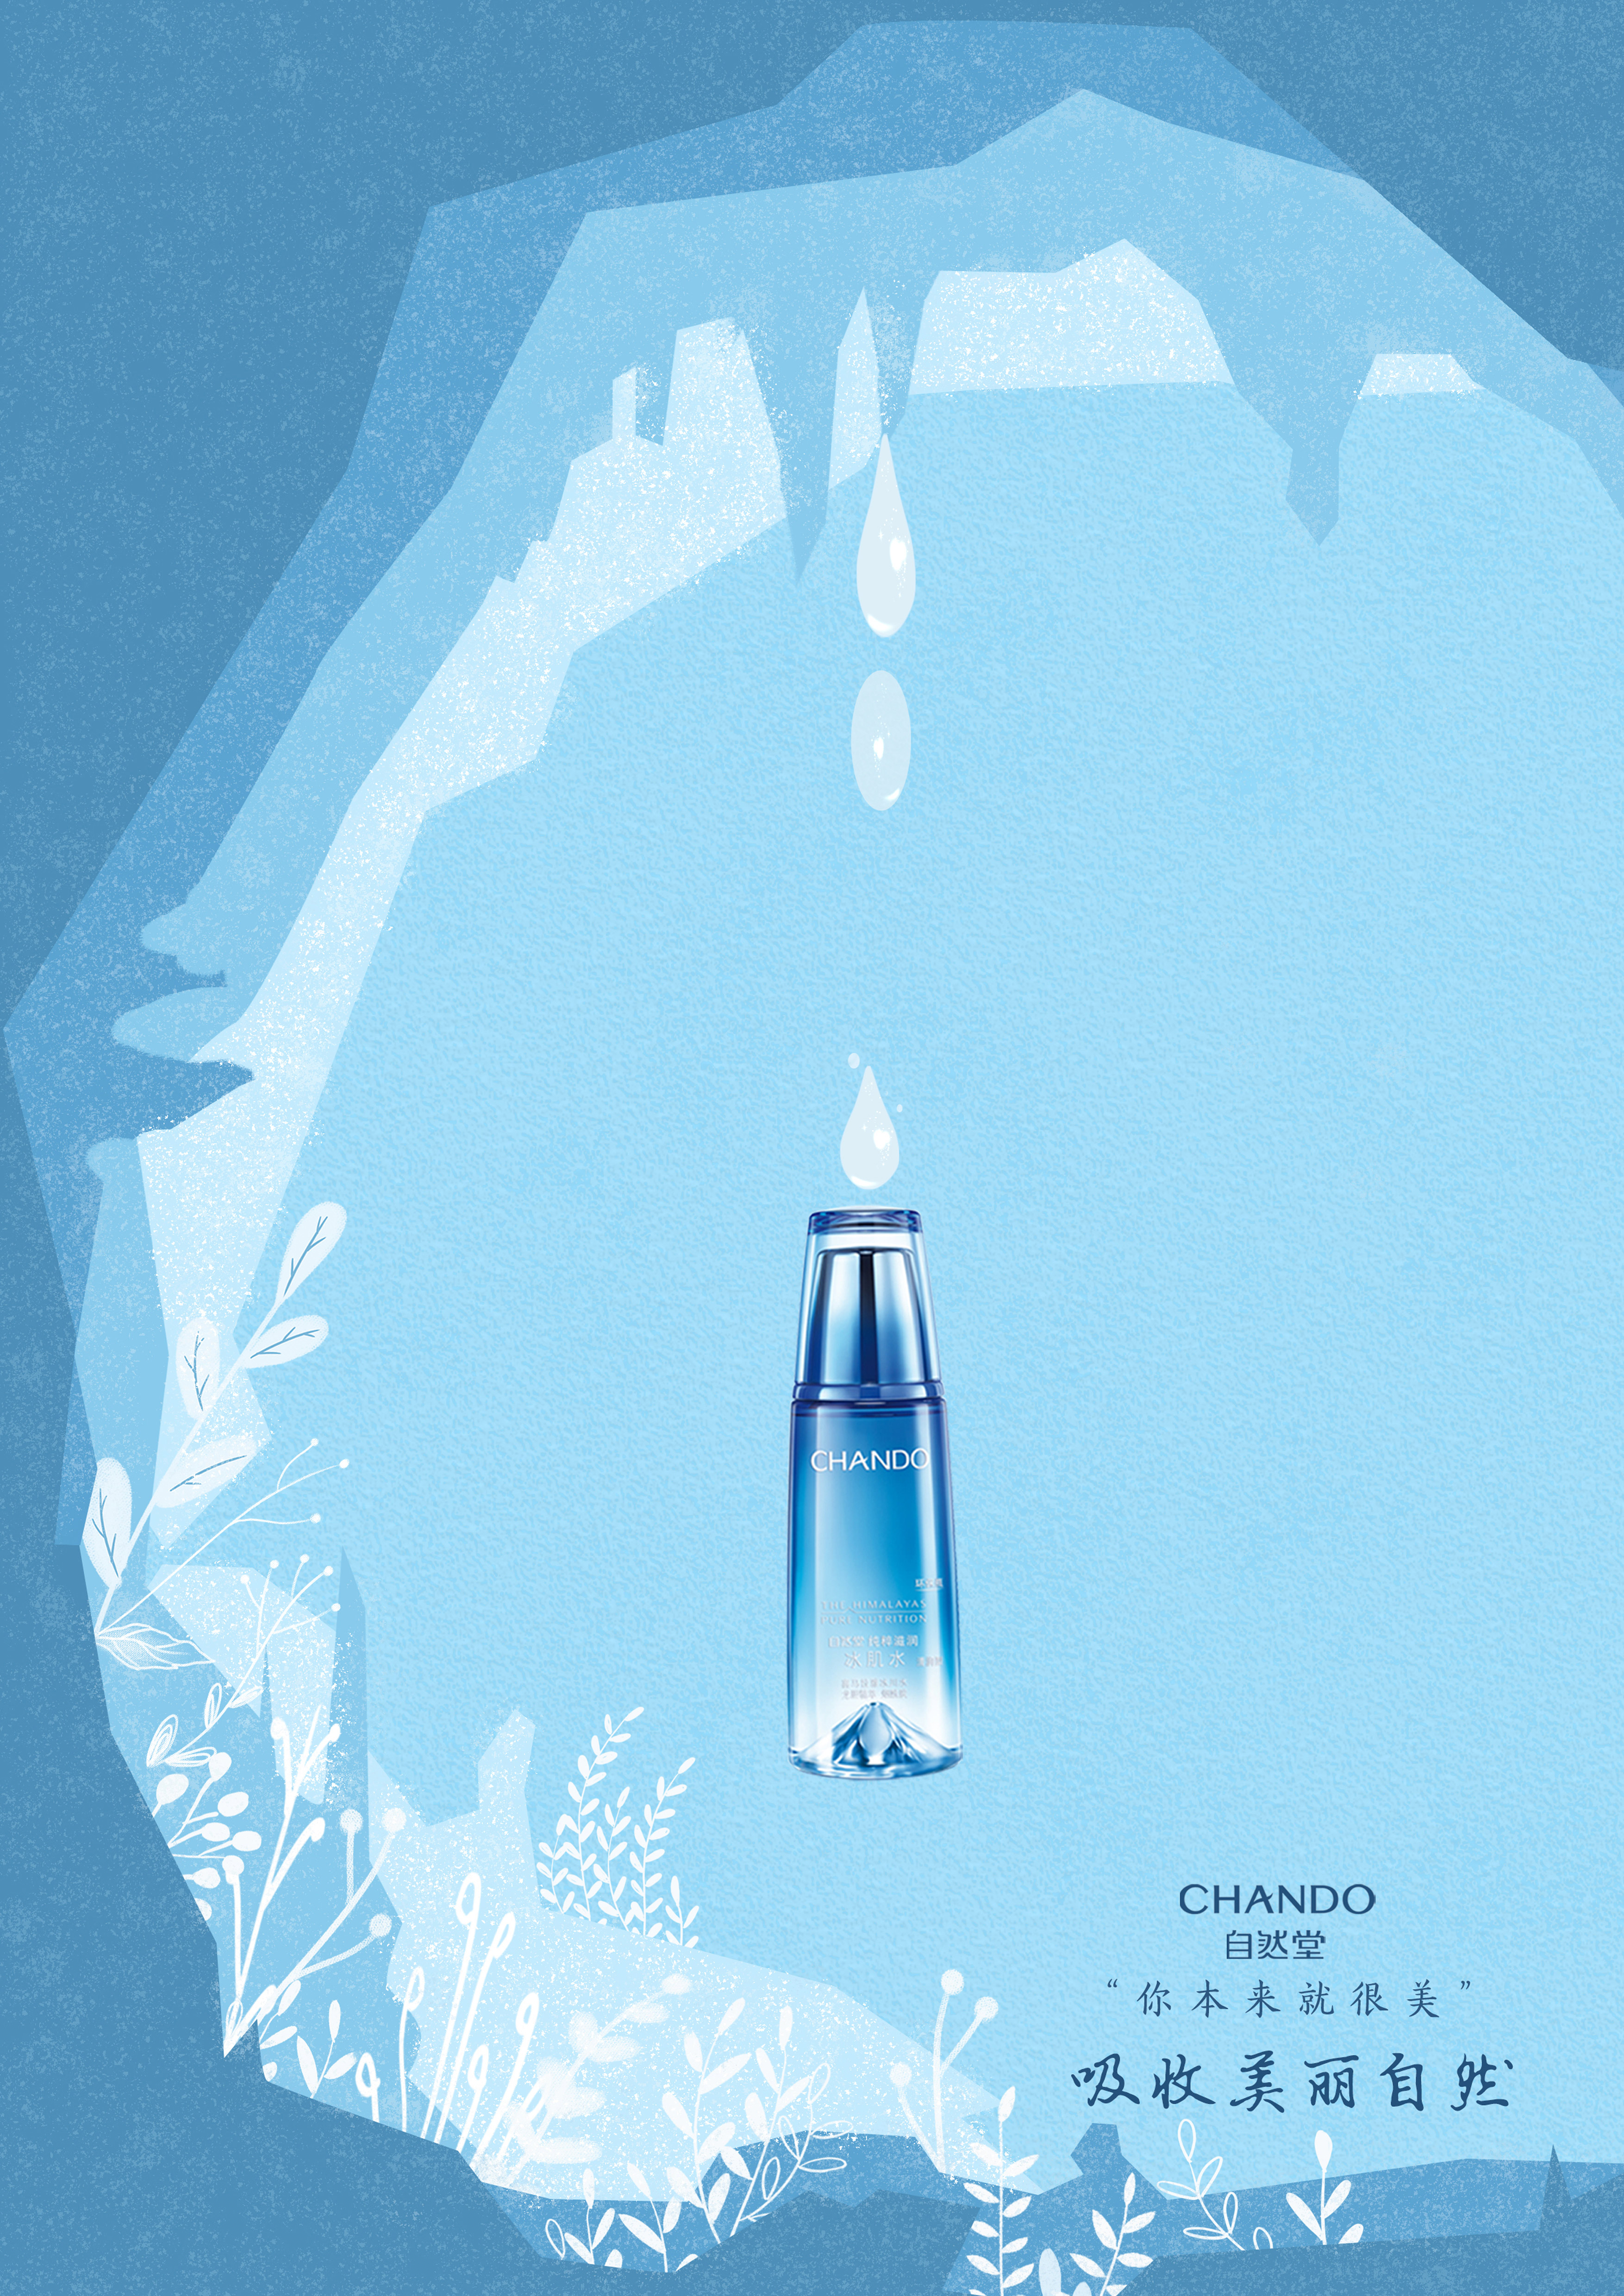 自然堂冰肌水广告图片